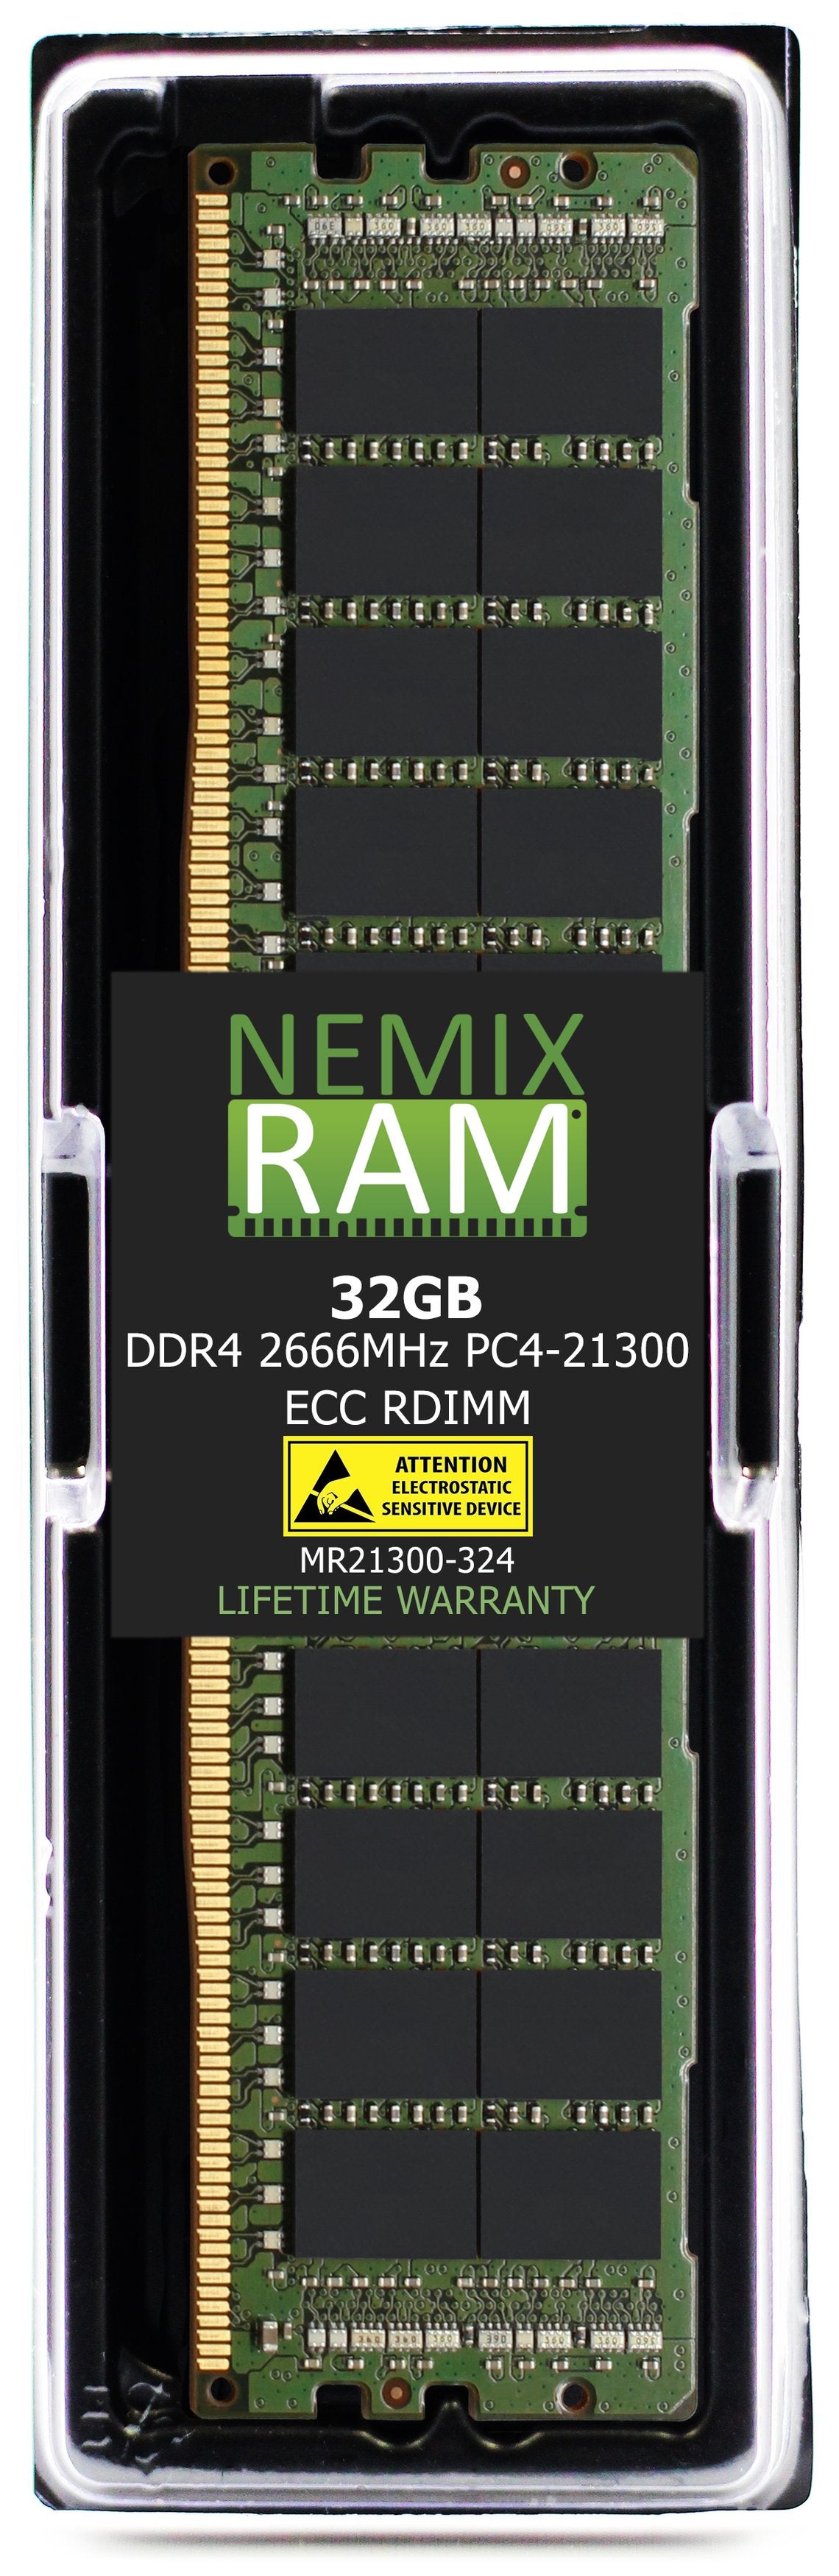 Hynix HMA84GR7AFR4N-VK 32GB DDR4 2666MHZ PC4-21300 RDIMM Compatible Memory Module